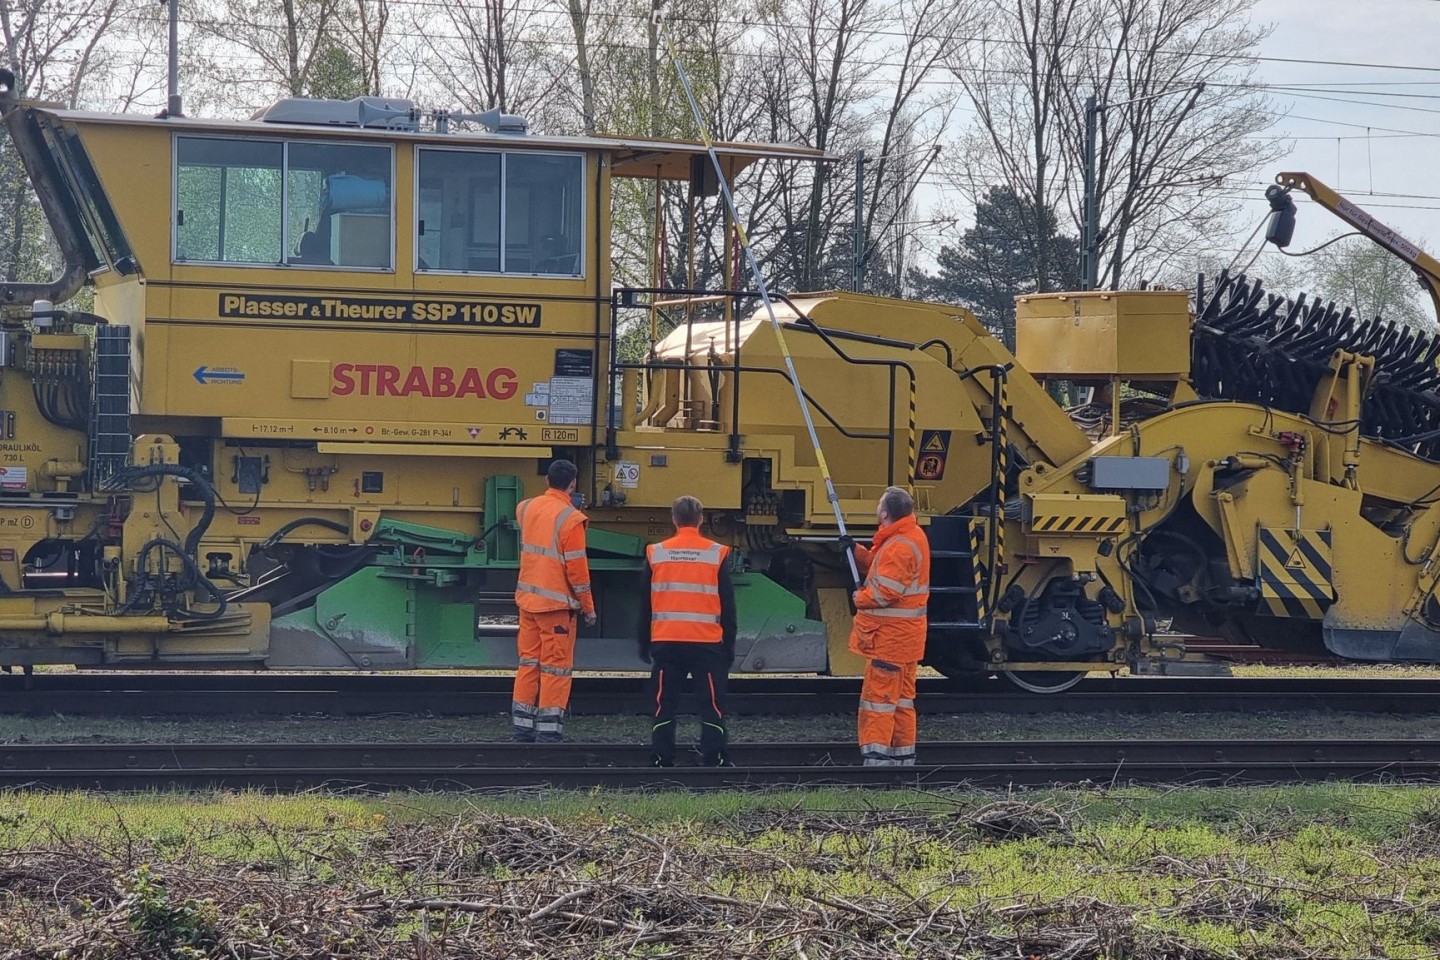 Nach dem Stromschlag, durch den ein Jugenlicher lebensgefährlich verletzt wurde, untersuchen Bahn-Mitarbeiter in Langenhagen die Leitung.